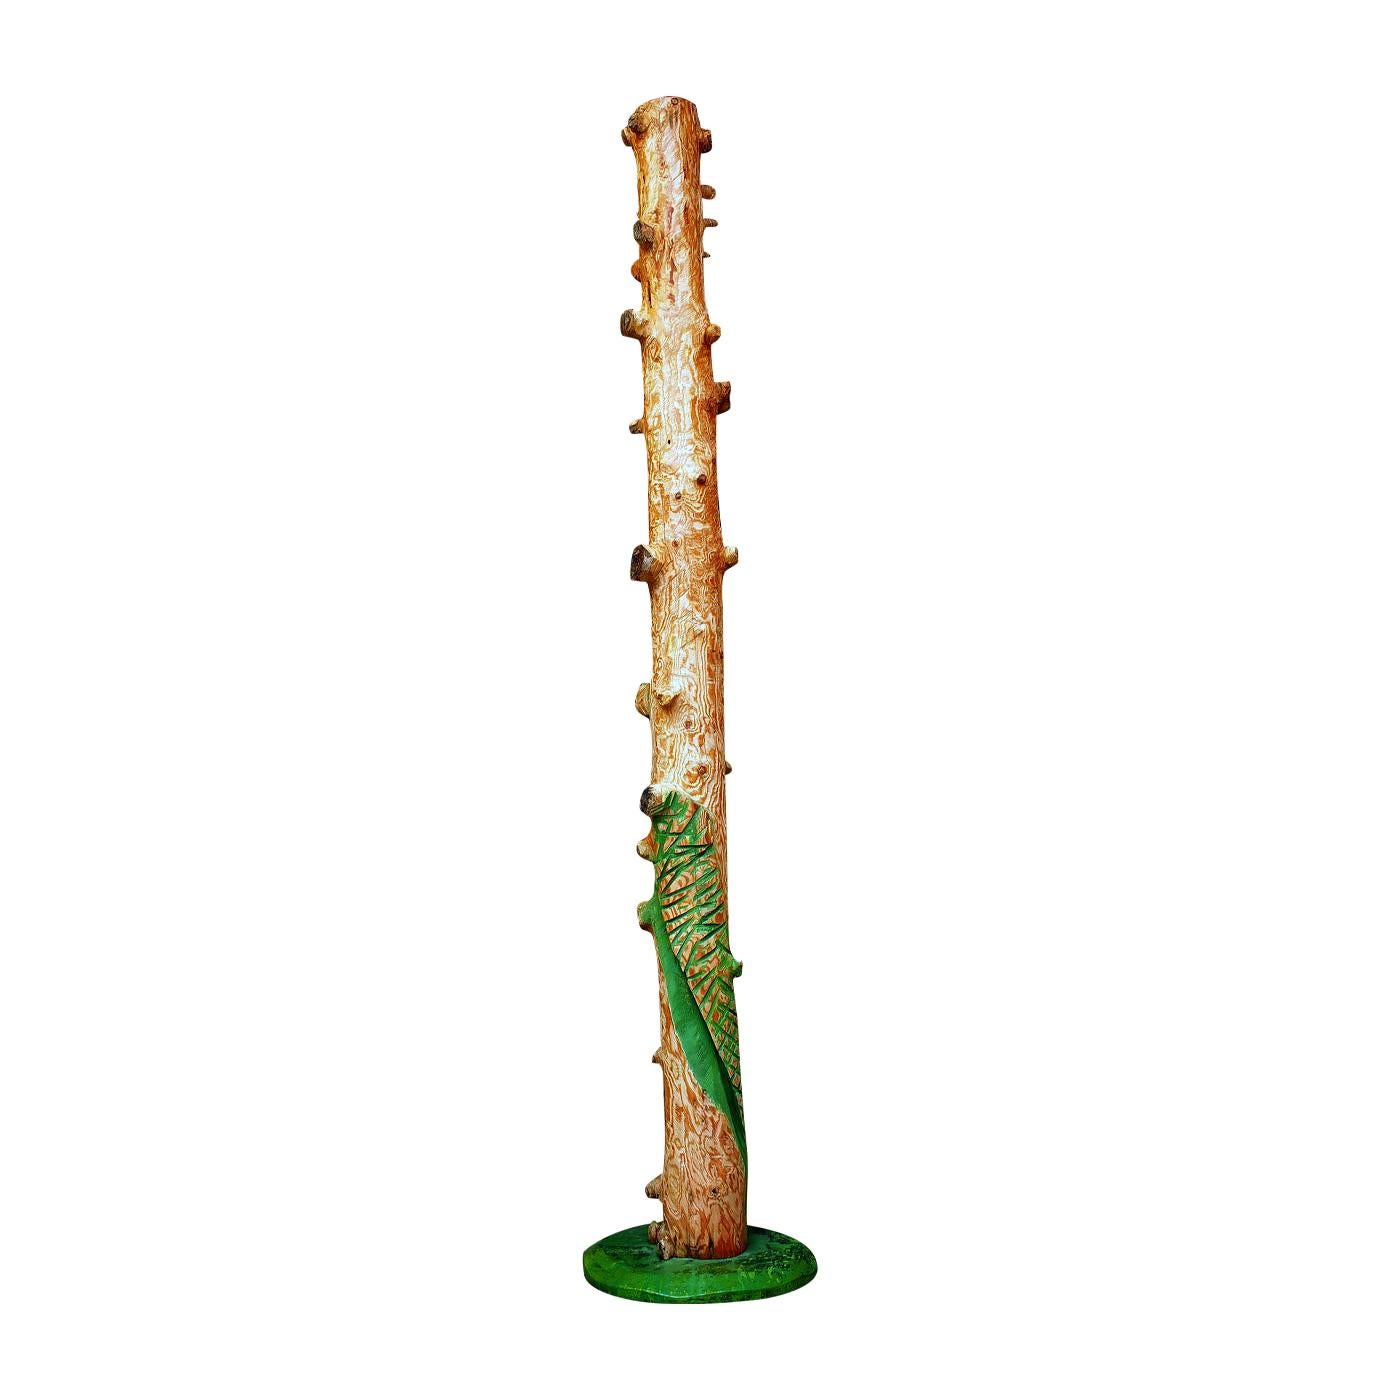 Evergreen Wood Trunk Sculpture